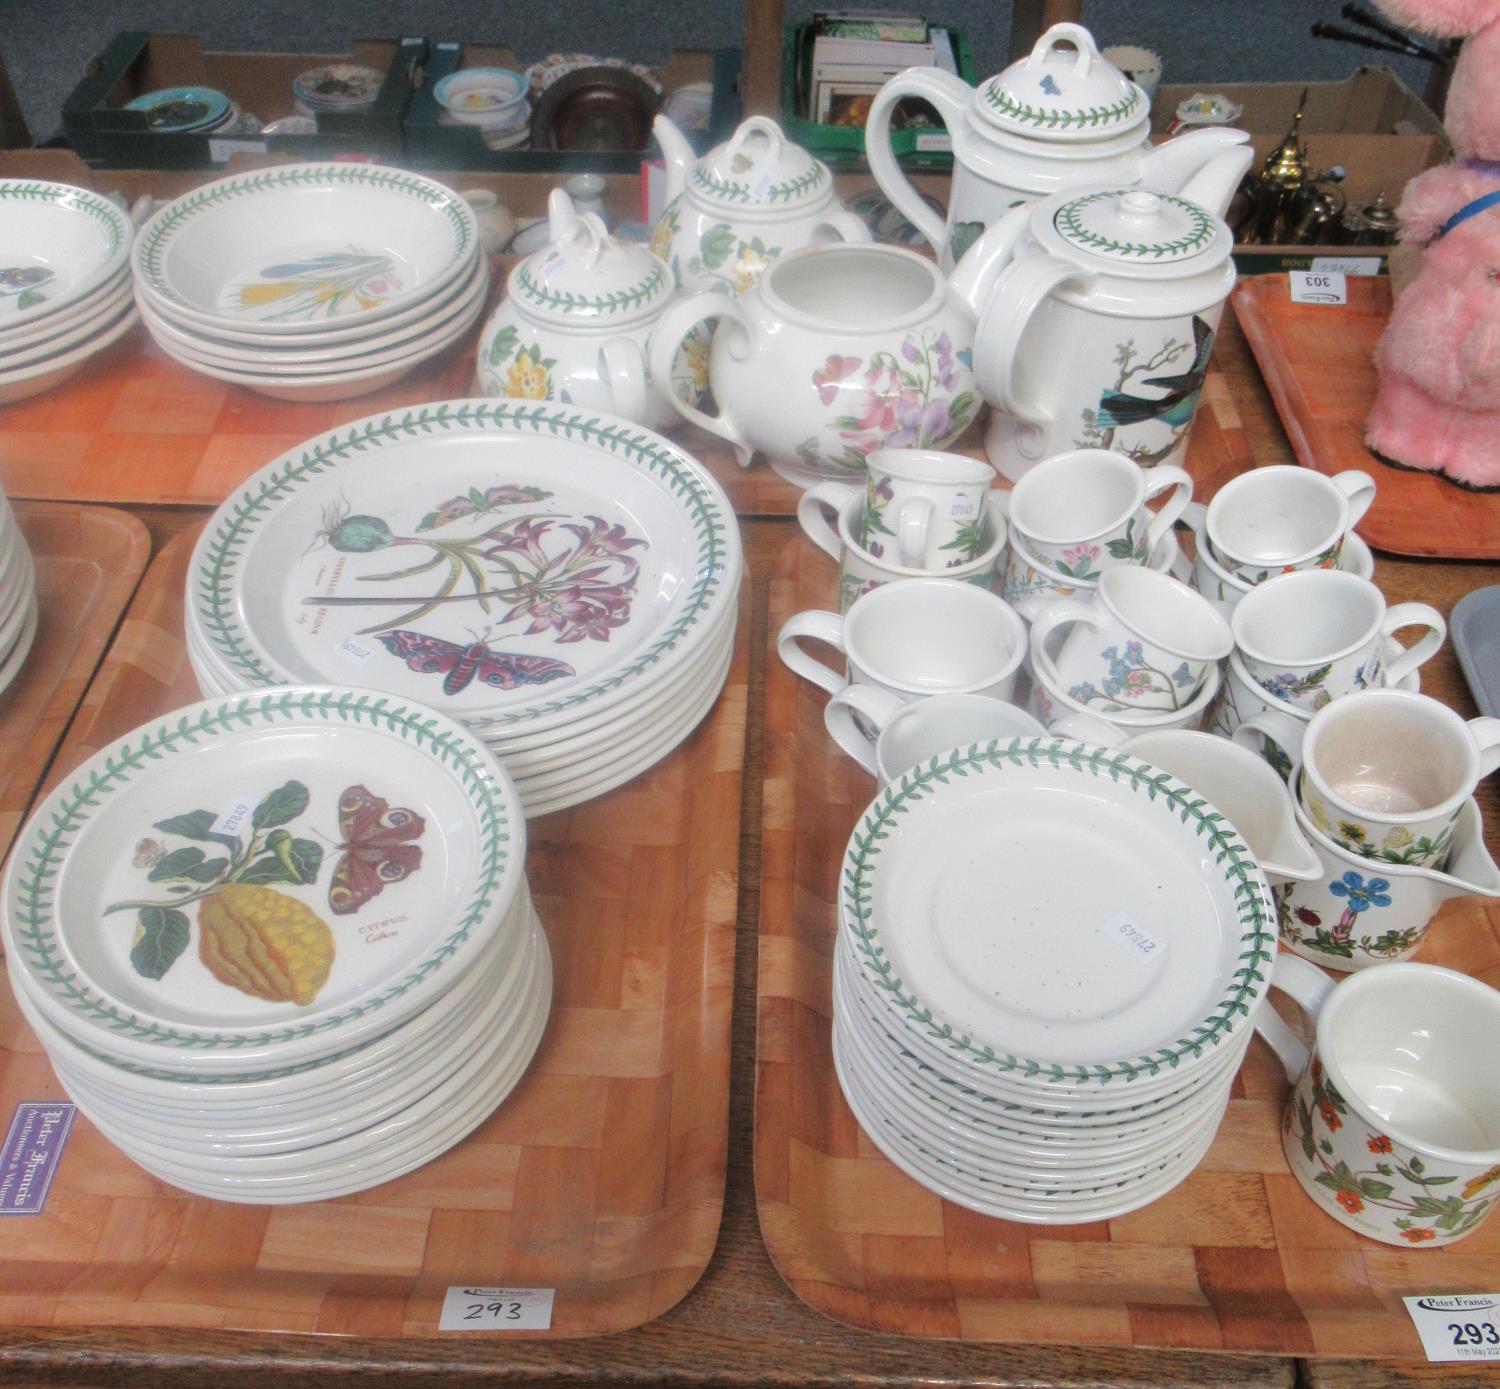 Ten trays of Portmeirion dinnerware etc. comprising: 'Botanic Garden' dinner plates, side plates, - Image 2 of 4